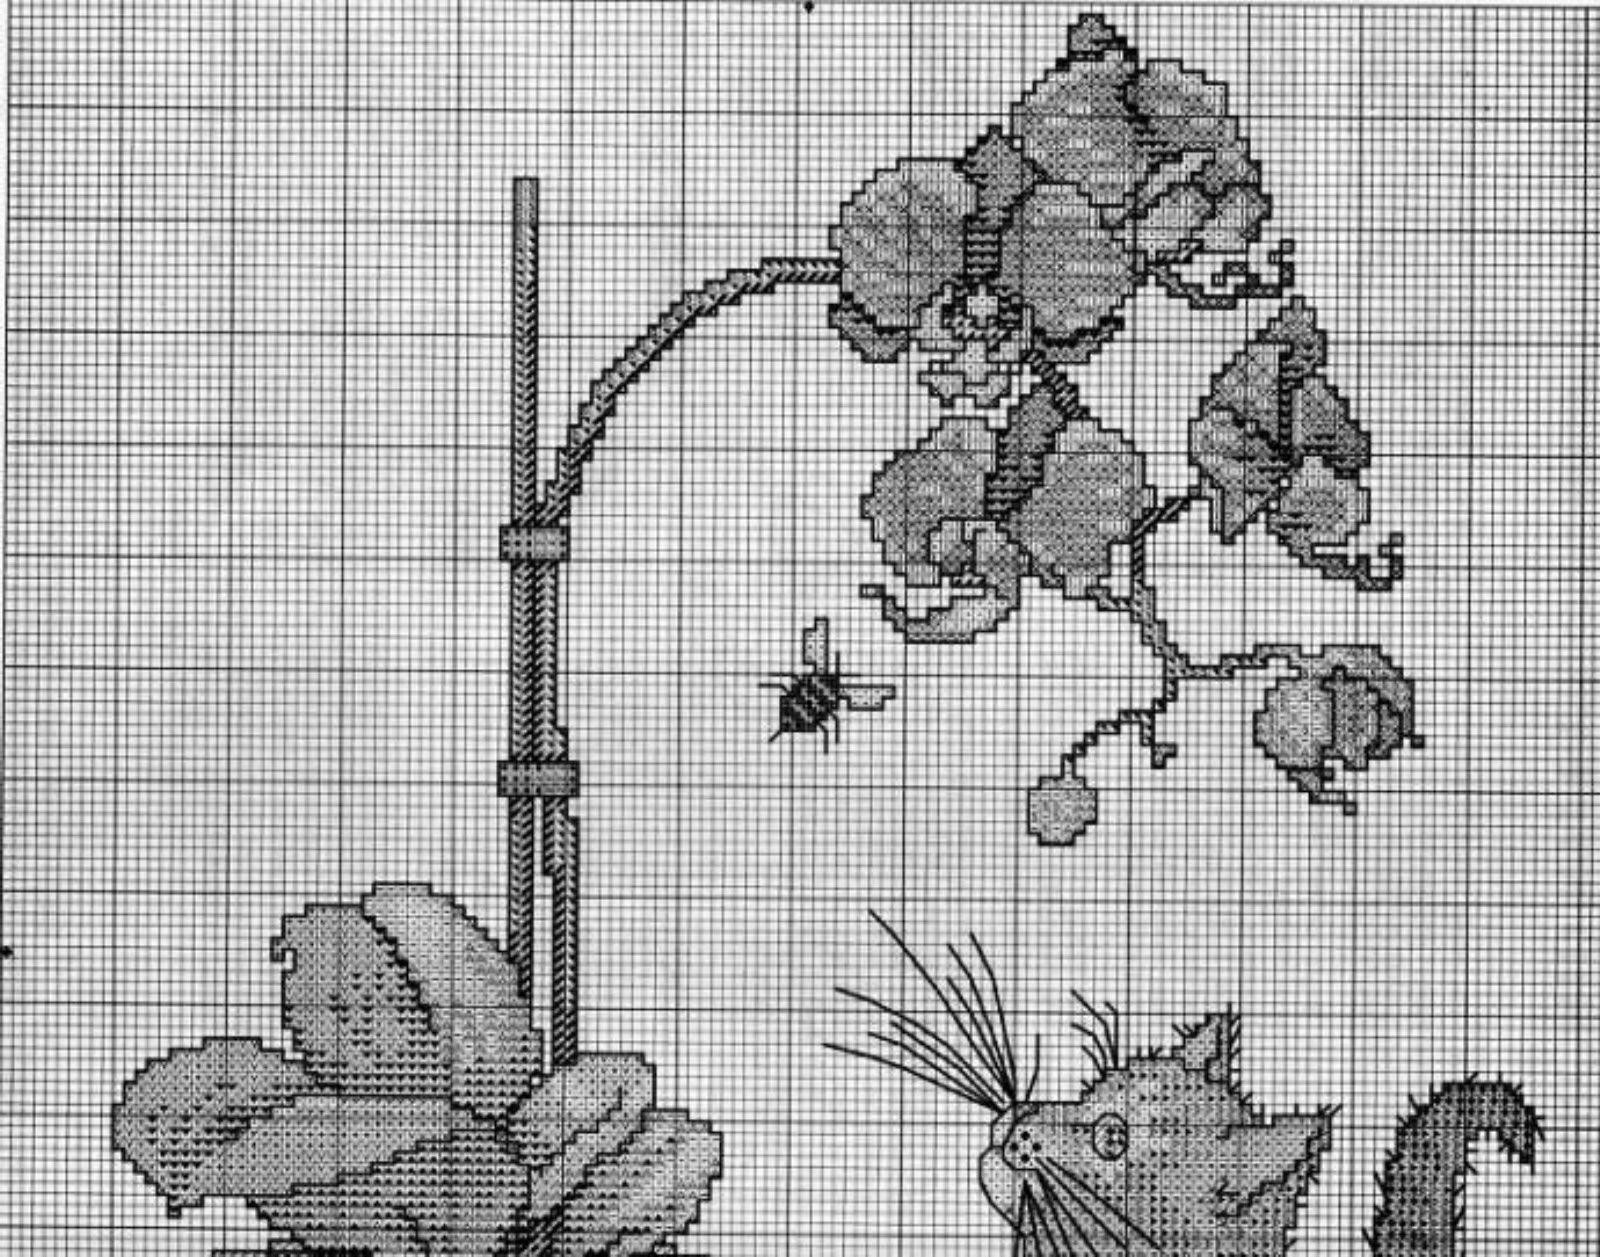 Вышивка крестом орхидеи монохромный схемы